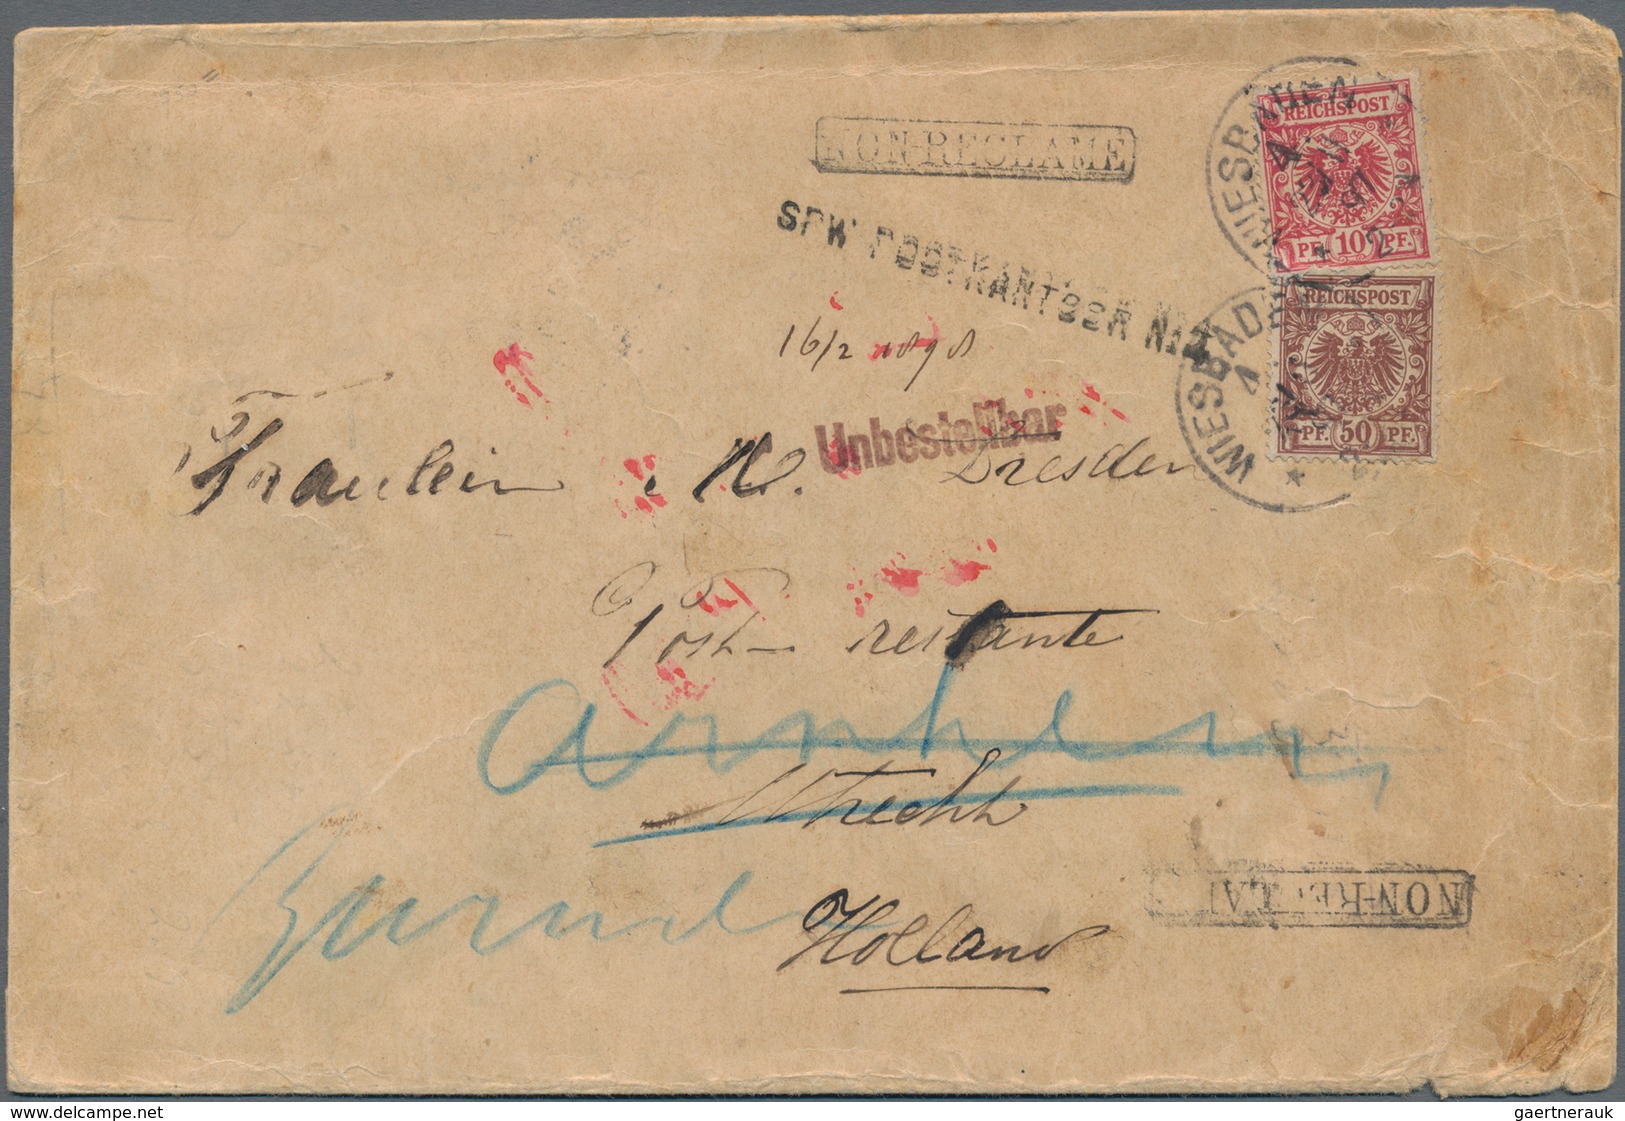 Niederlande - Stempel: 1897, "SPW POSTKANTOOR No. 4", Single Line Handstamp On Cover From Germany, F - Postal History